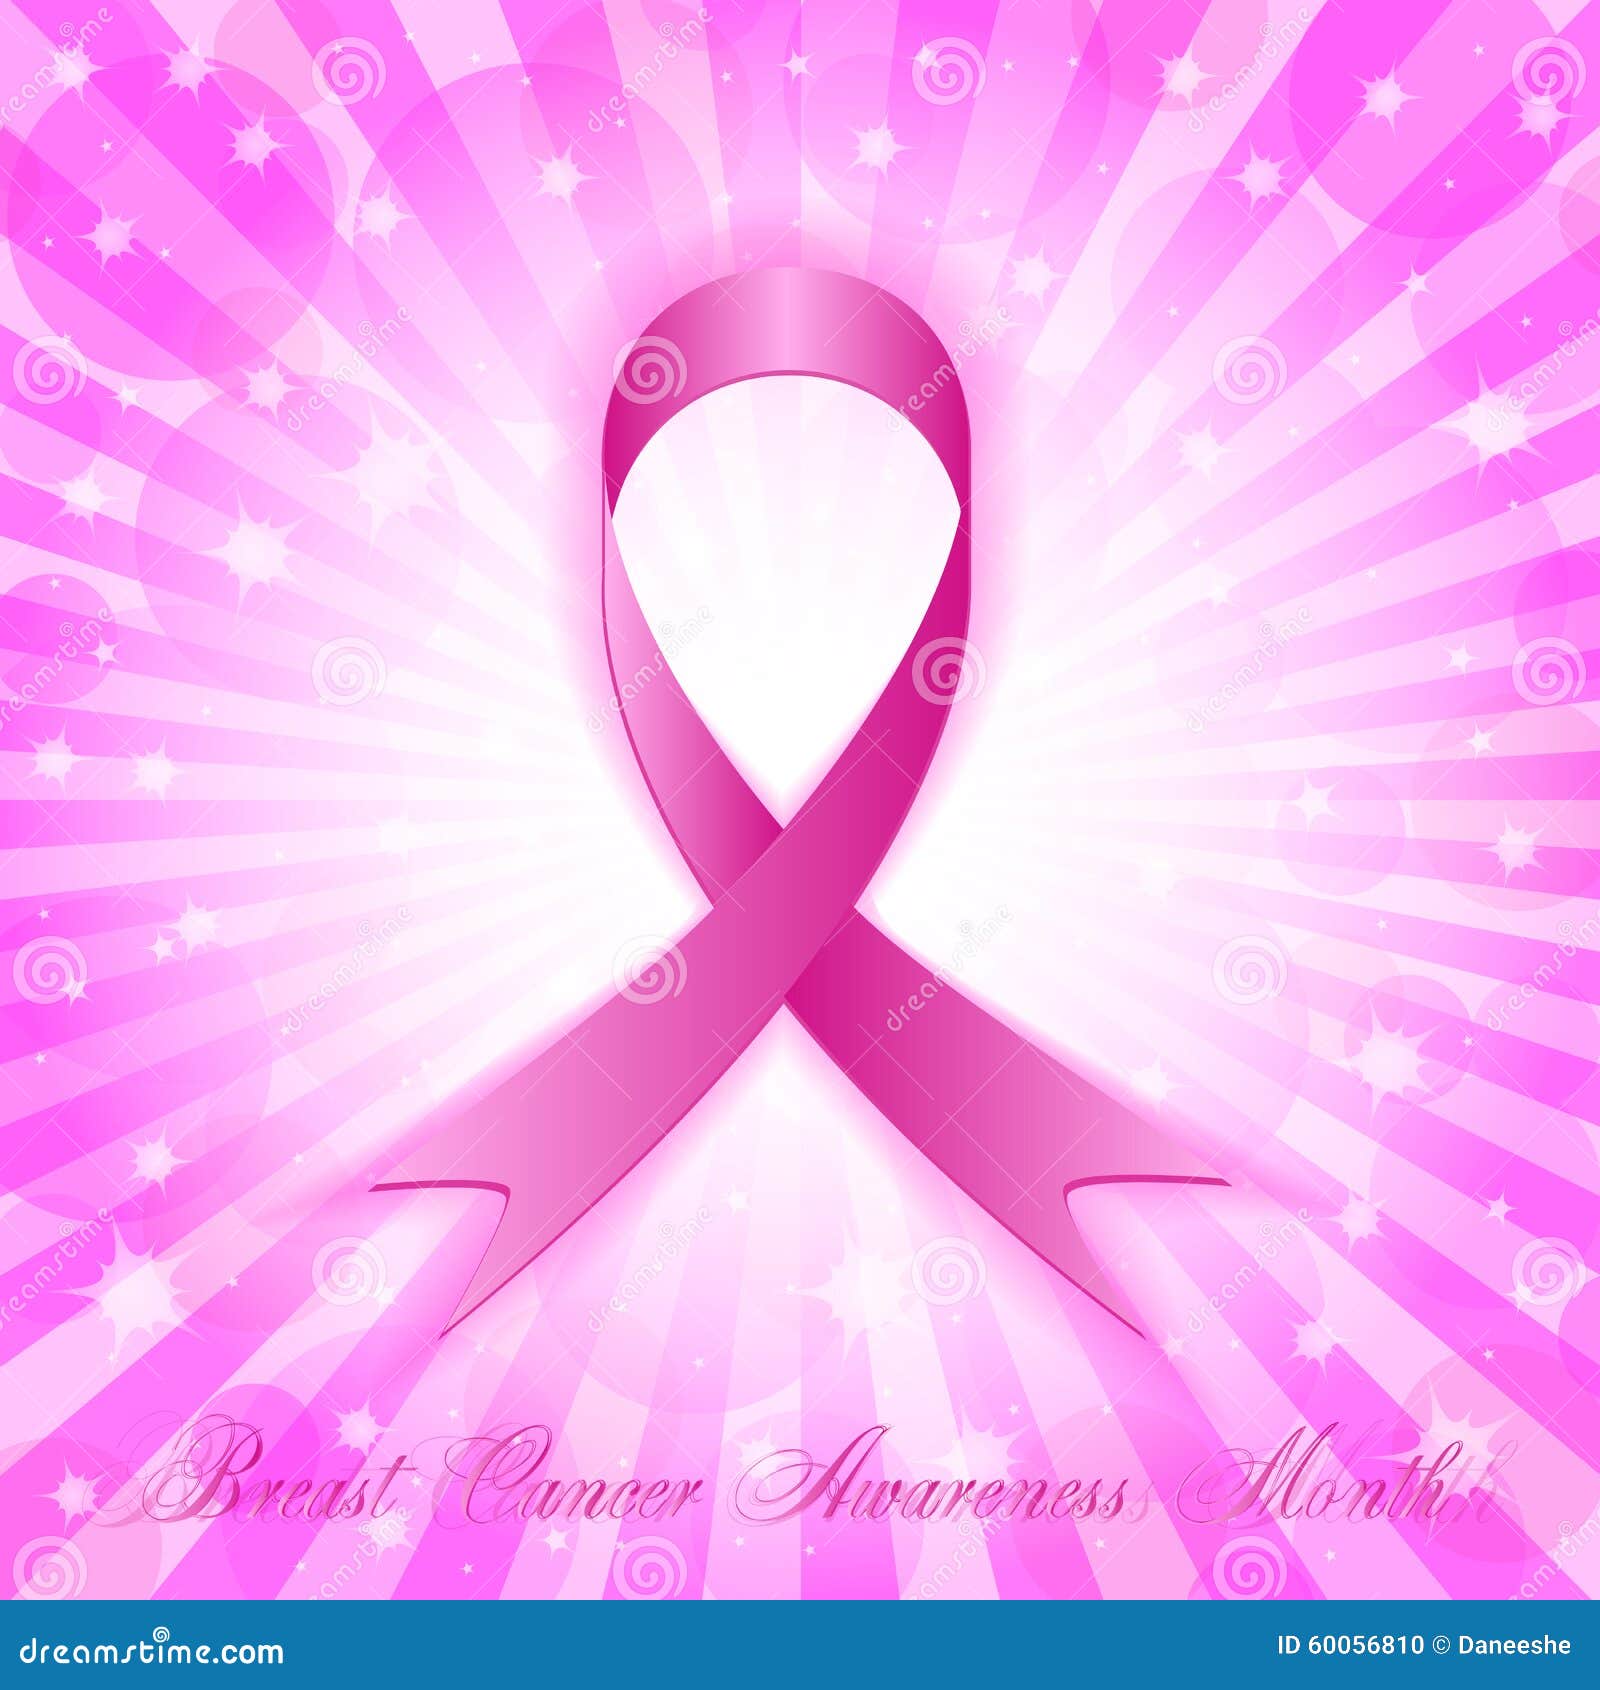 Breast Cancer Awareness Month  Breast Cancer Awareness Fan Art 35696524   Fanpop